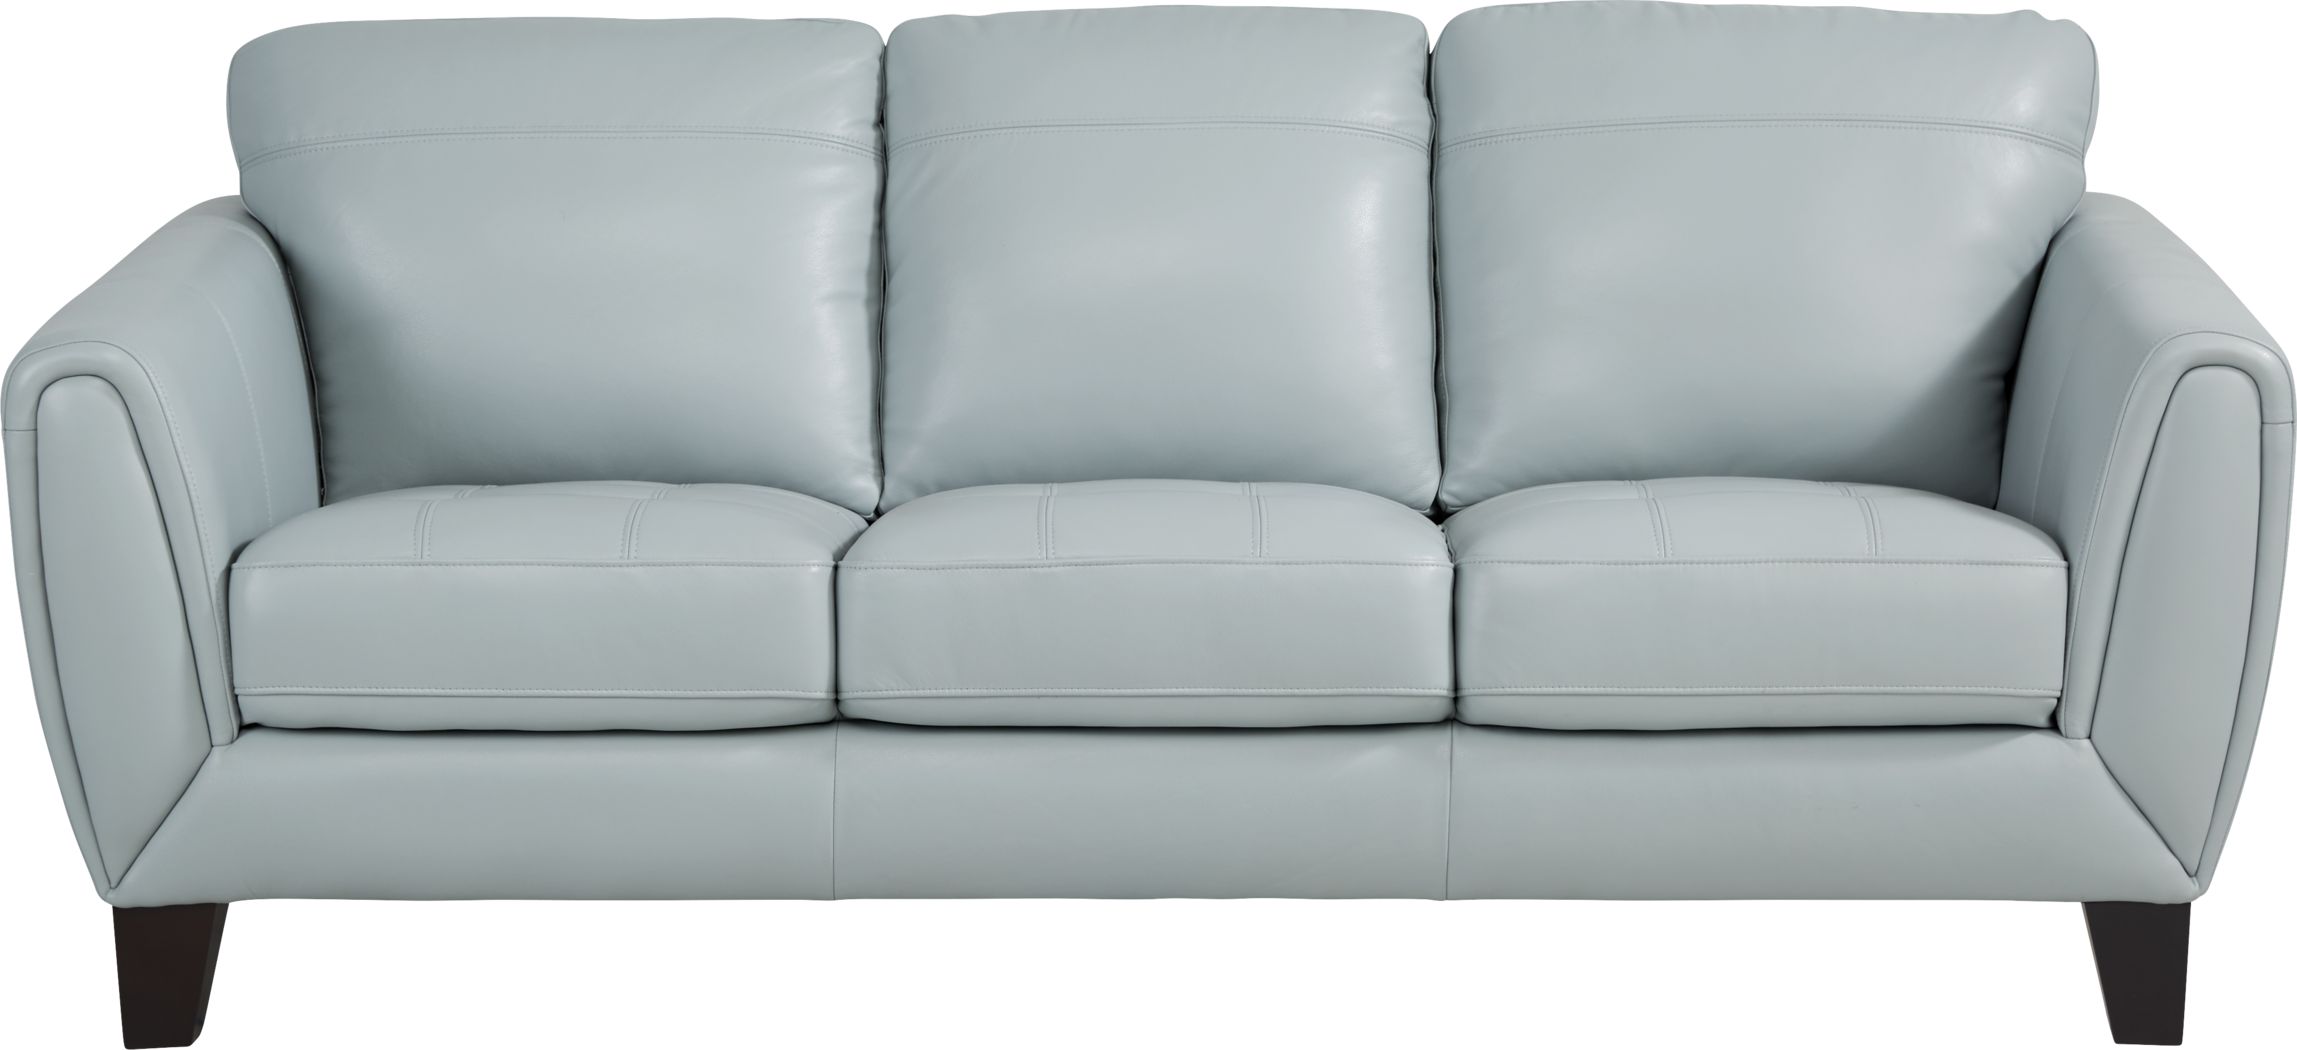 livorno leather sofa reviews